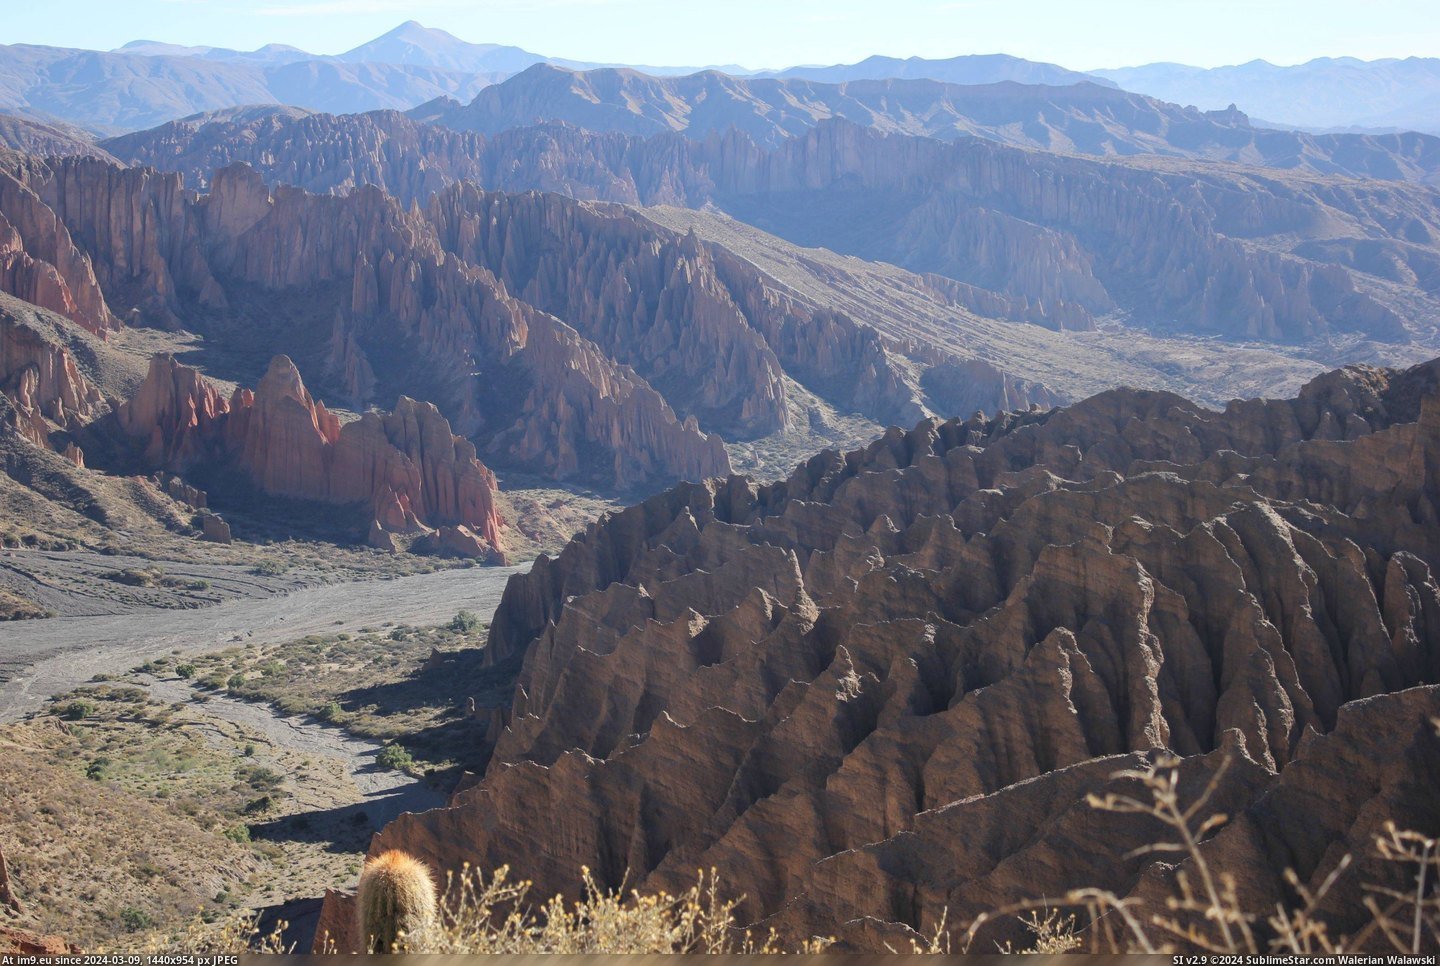 #Canyon #Bolivia #Tupiza #3110x2073 [Earthporn] Canyon near Tupiza, Bolivia [3110x2073] [OC] Pic. (Изображение из альбом My r/EARTHPORN favs))